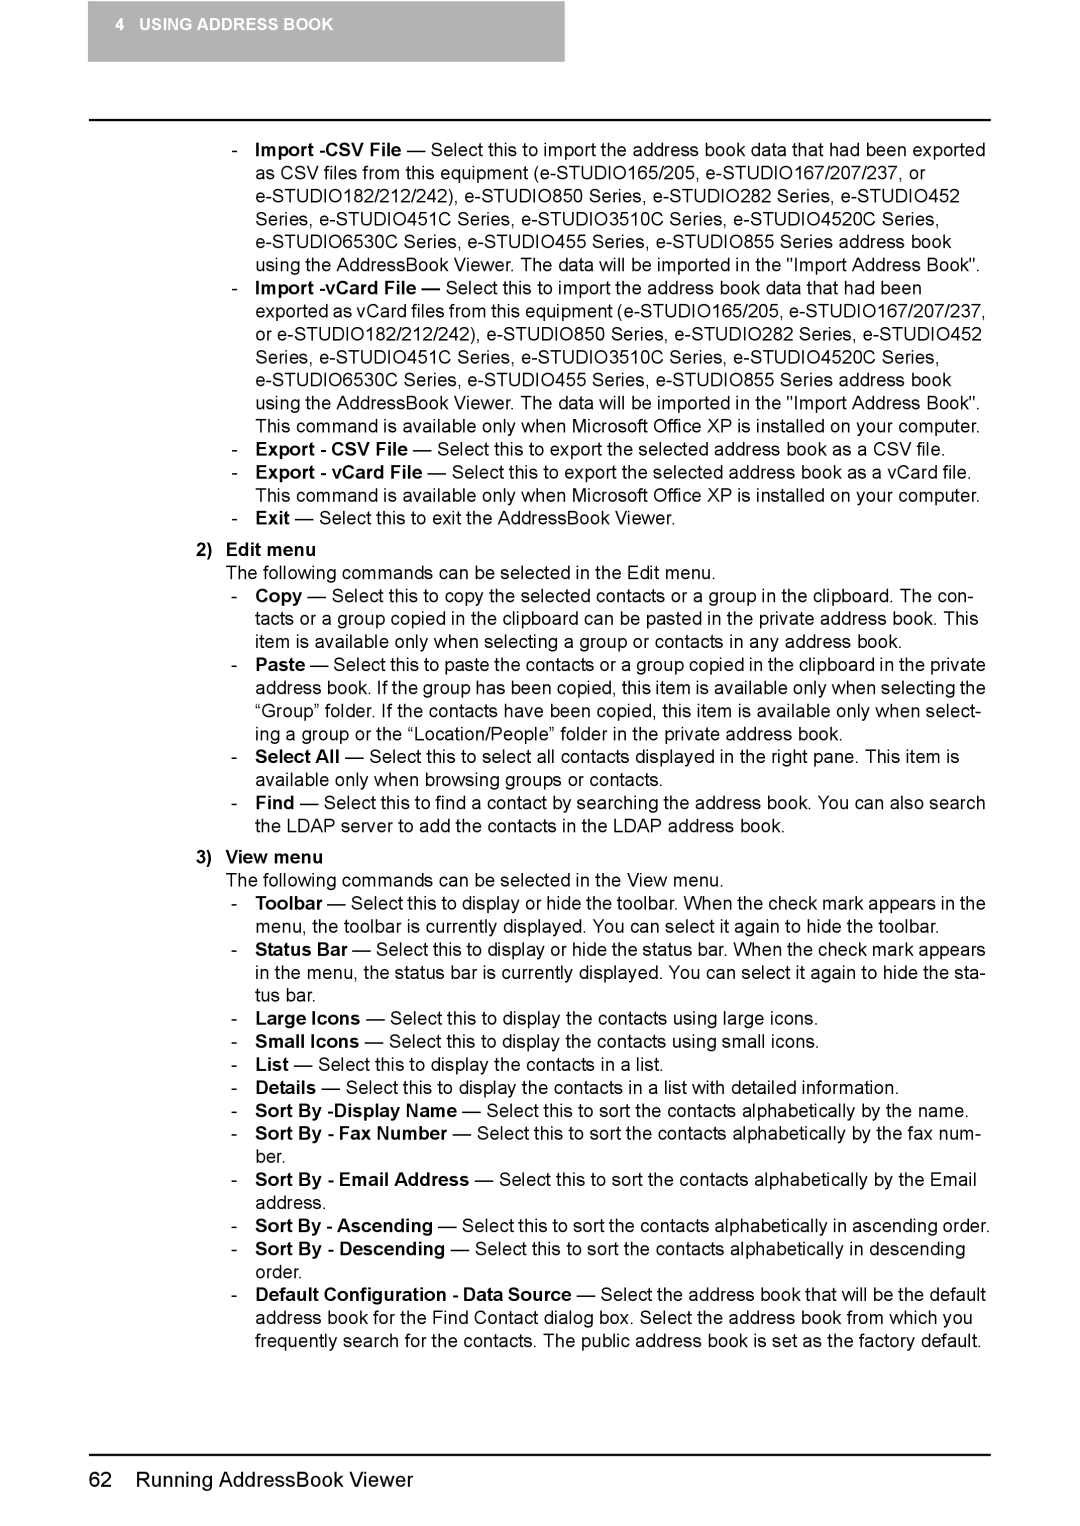 Toshiba GA-1191 manual Edit menu, View menu 